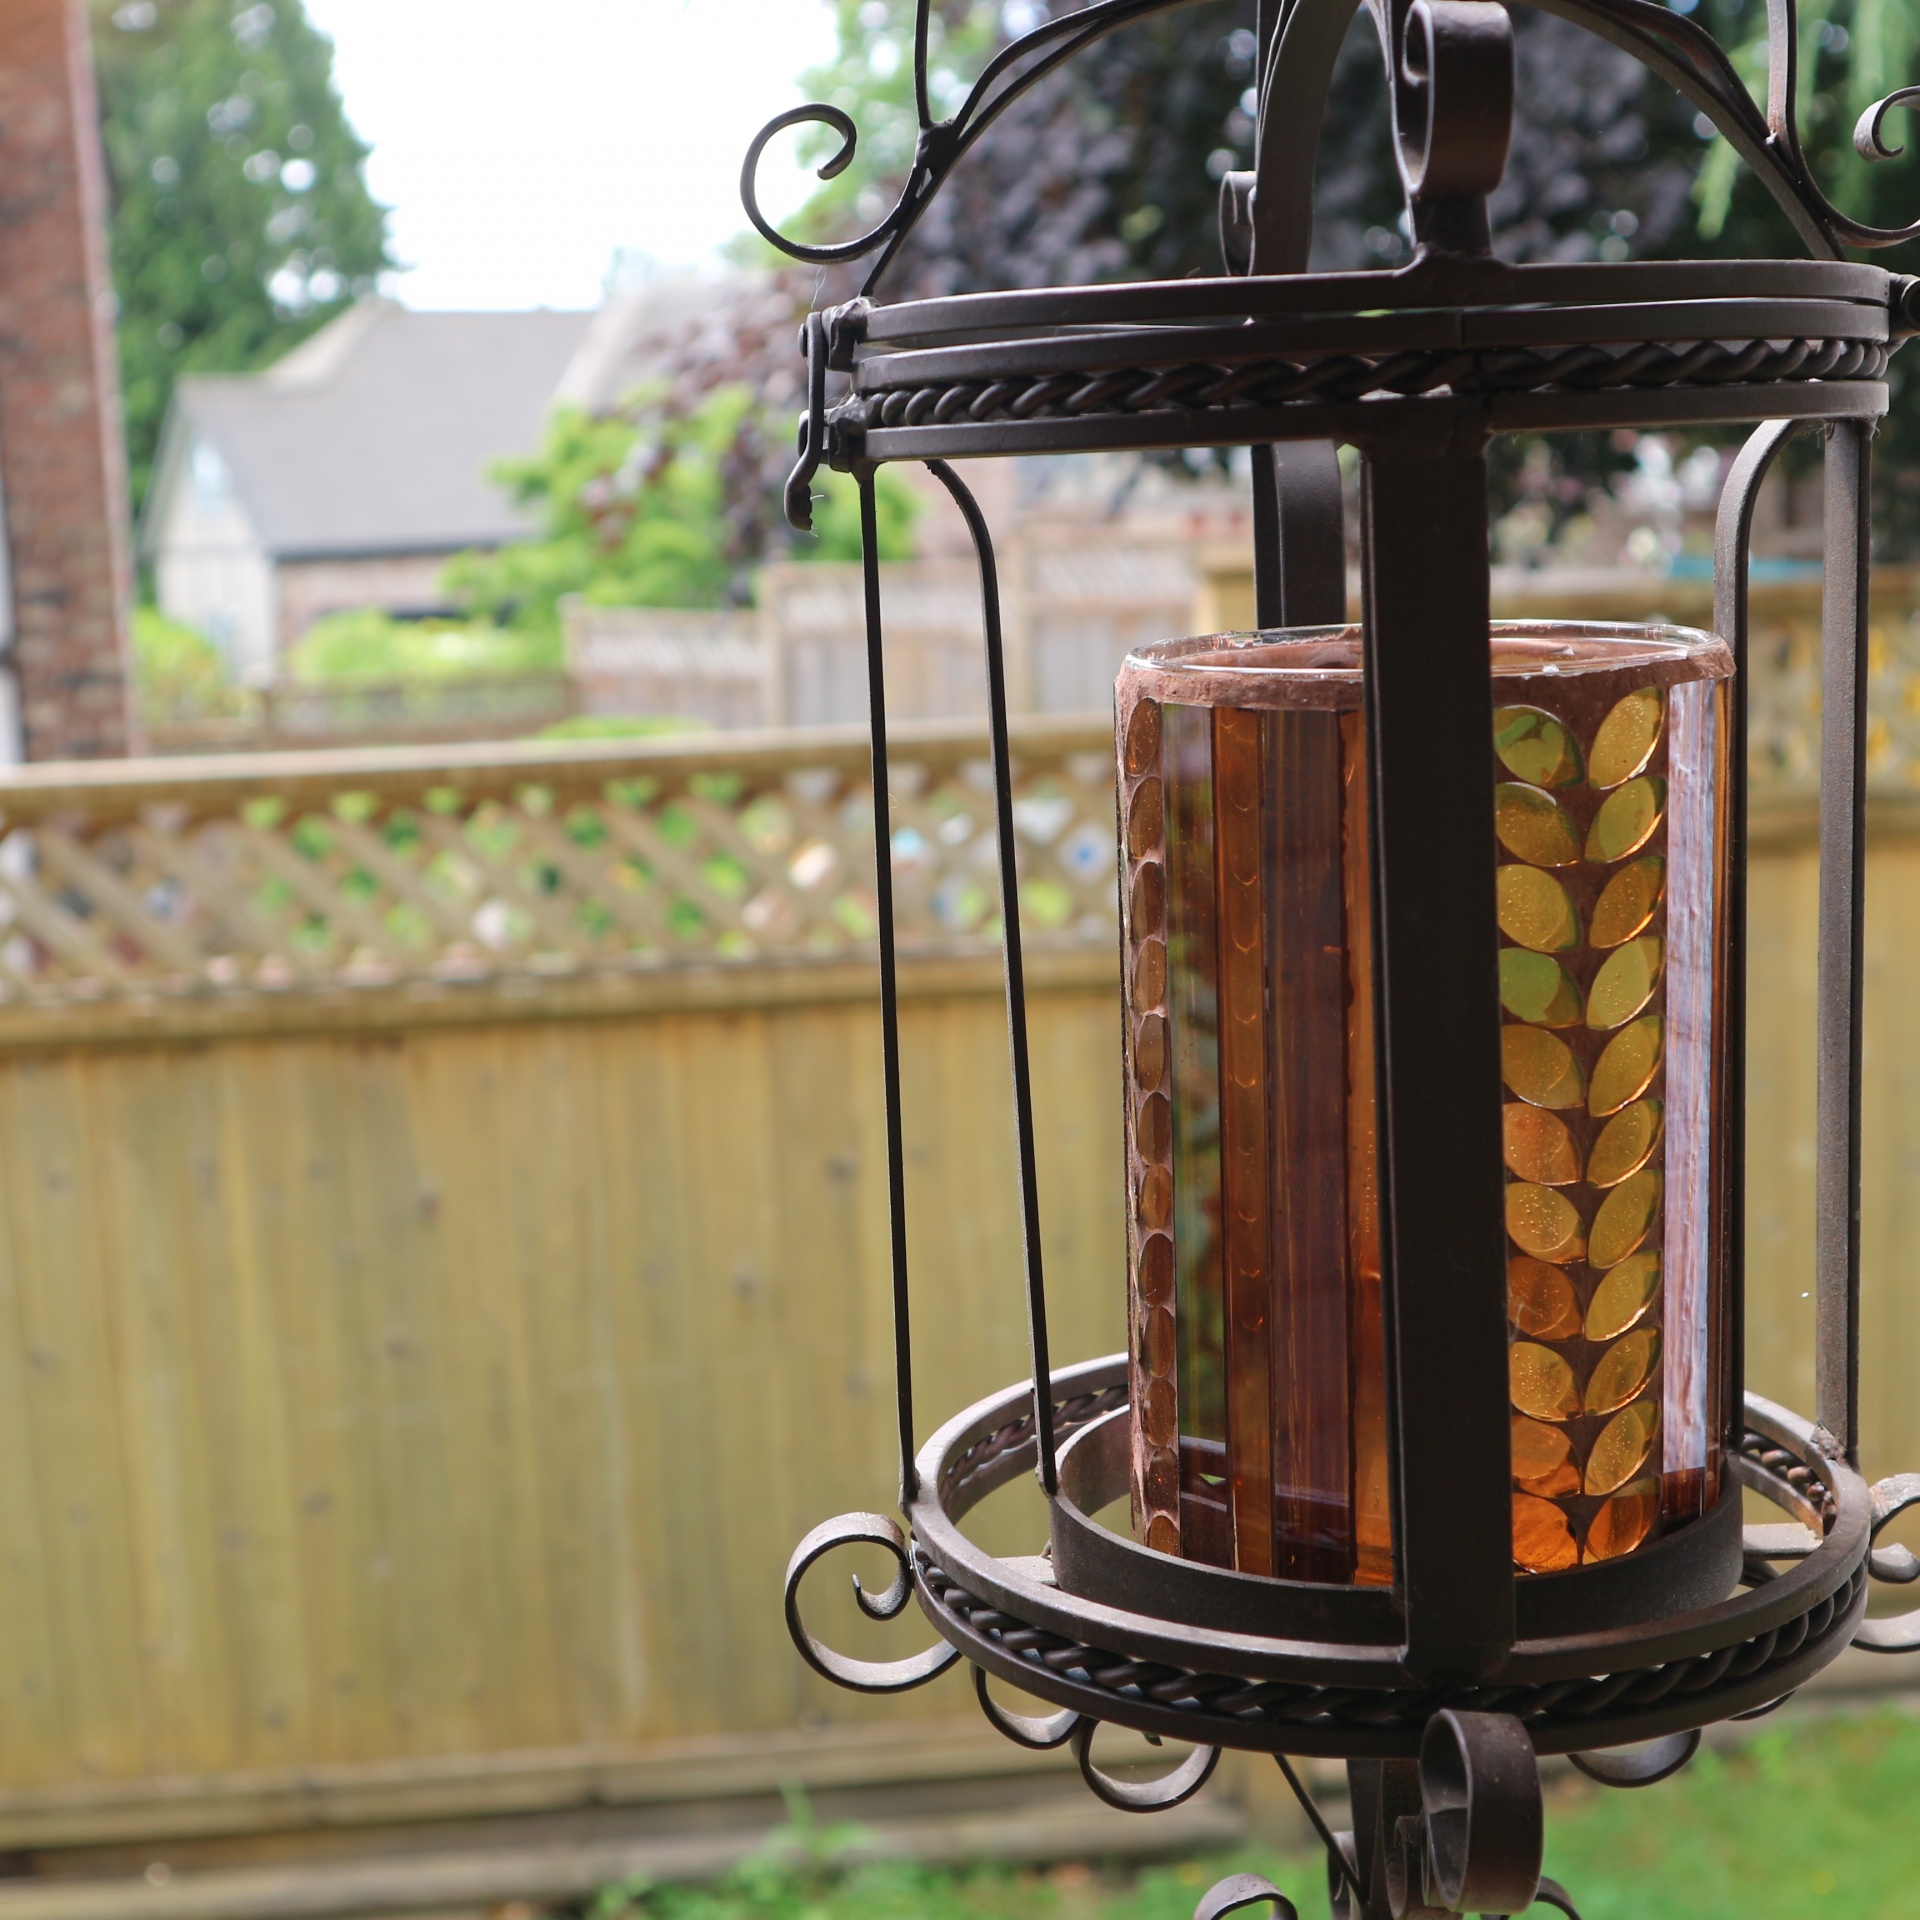 backyard lantern decorative free photo